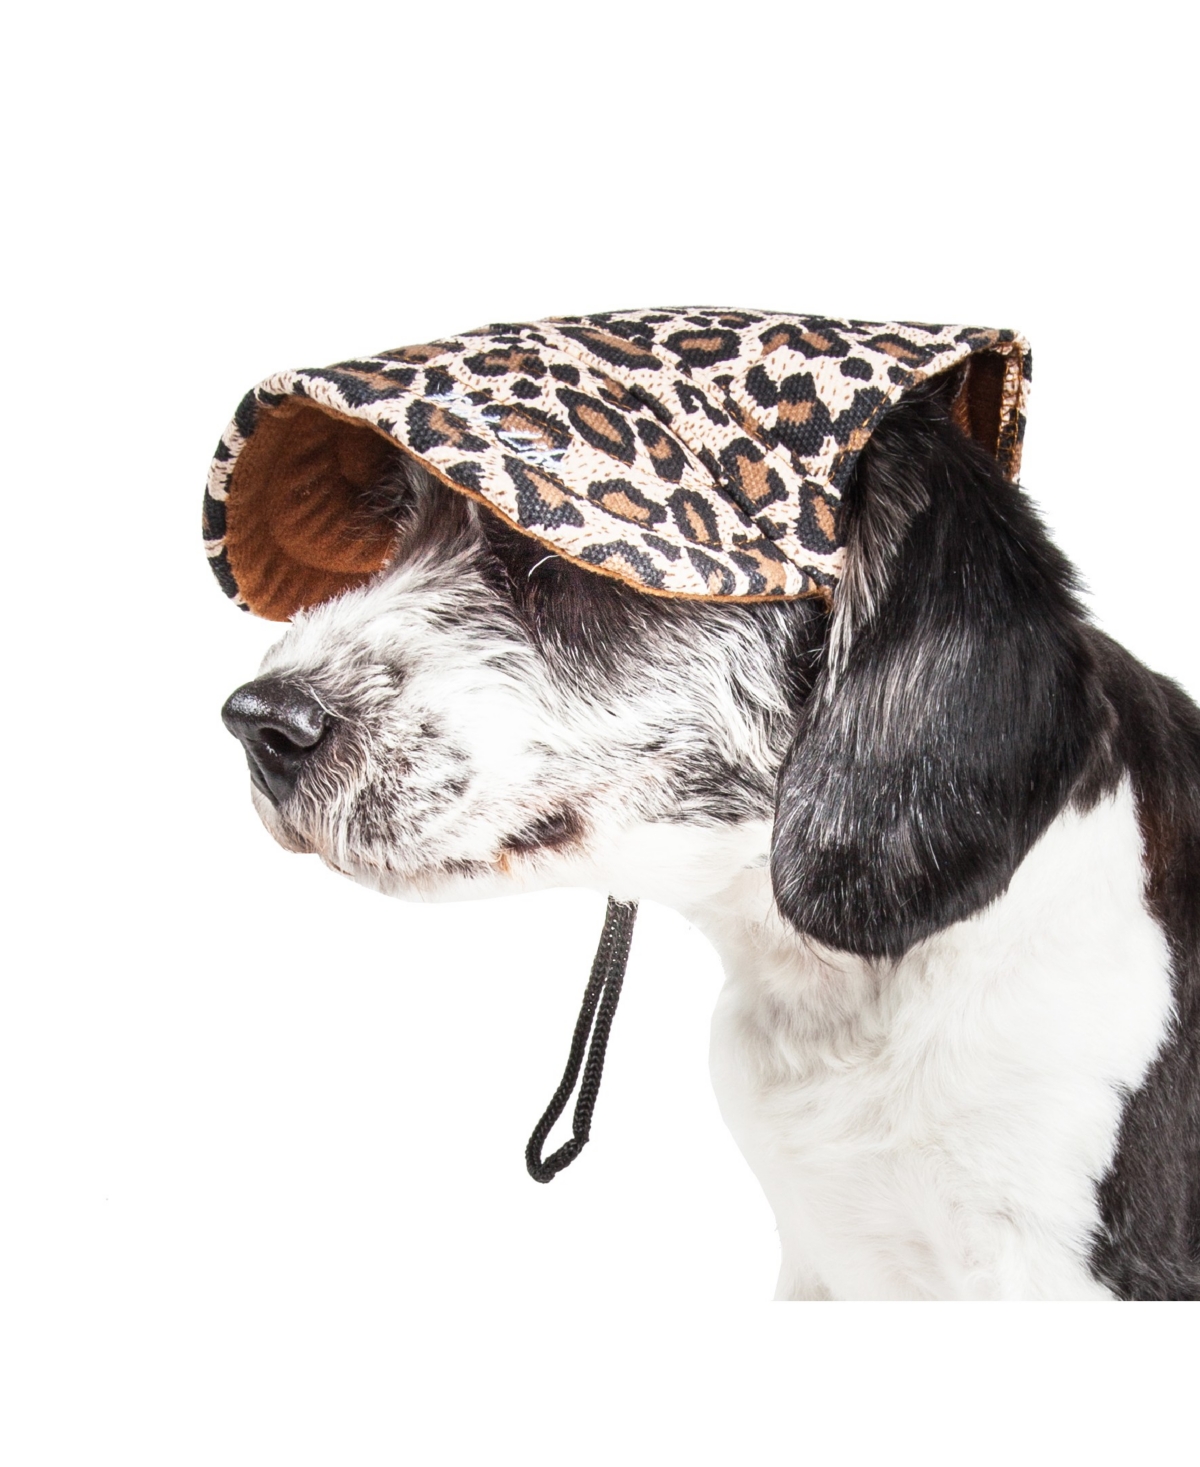 'Cheetah Bonita' Cheetah Patterned Uv Protectant Adjustable Dog Hat Cap - Brown